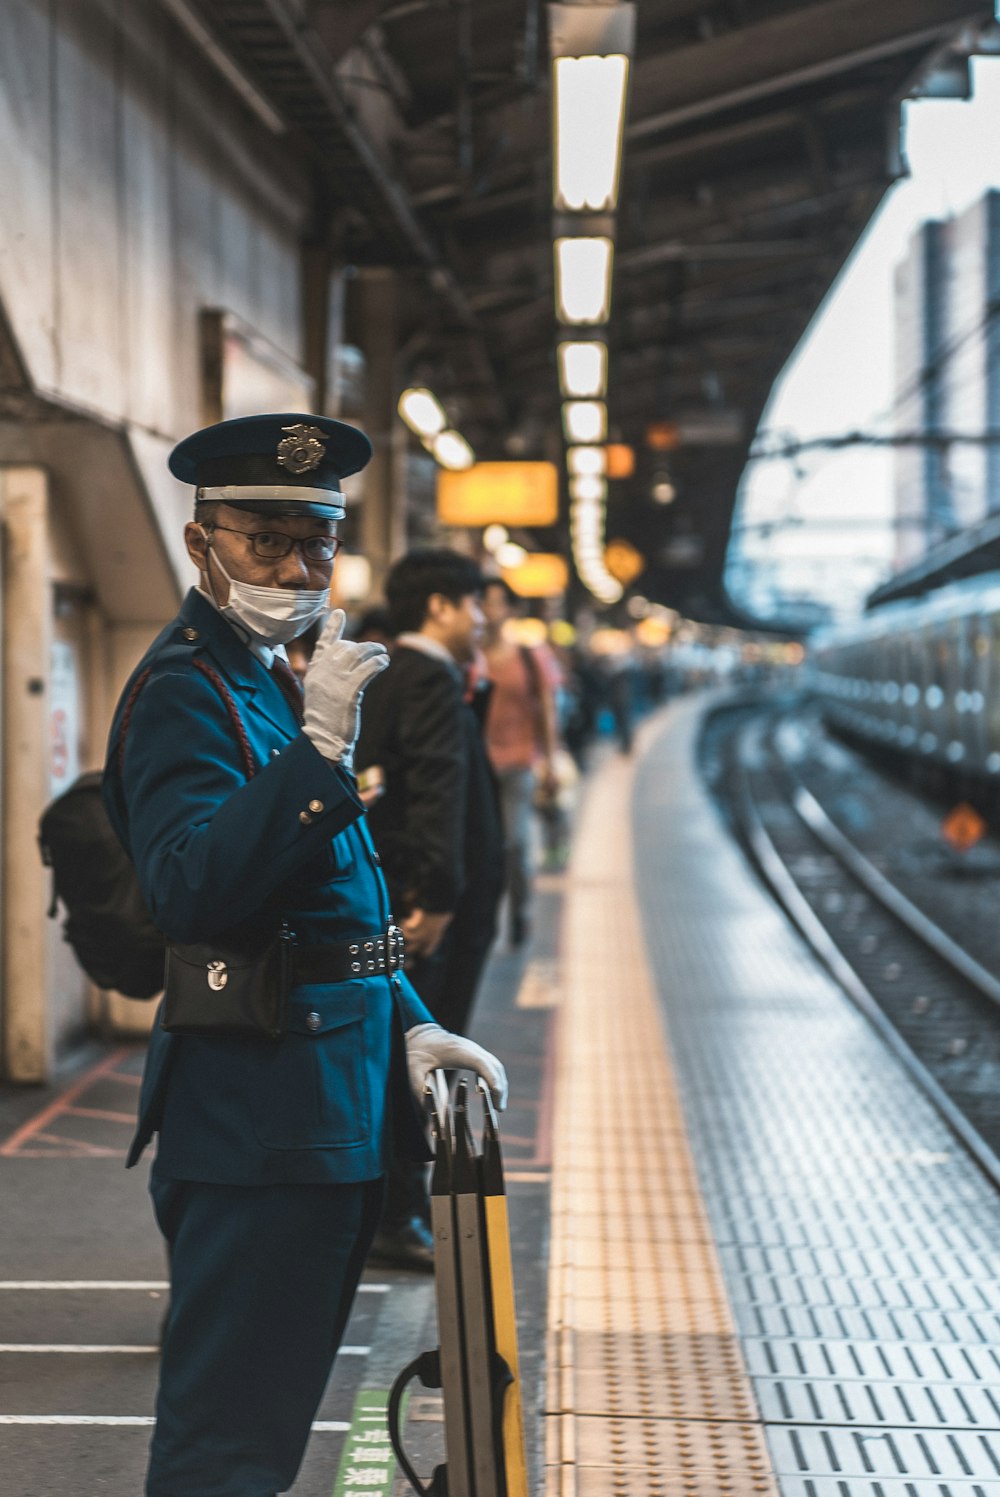 man in a uniform by train tracks